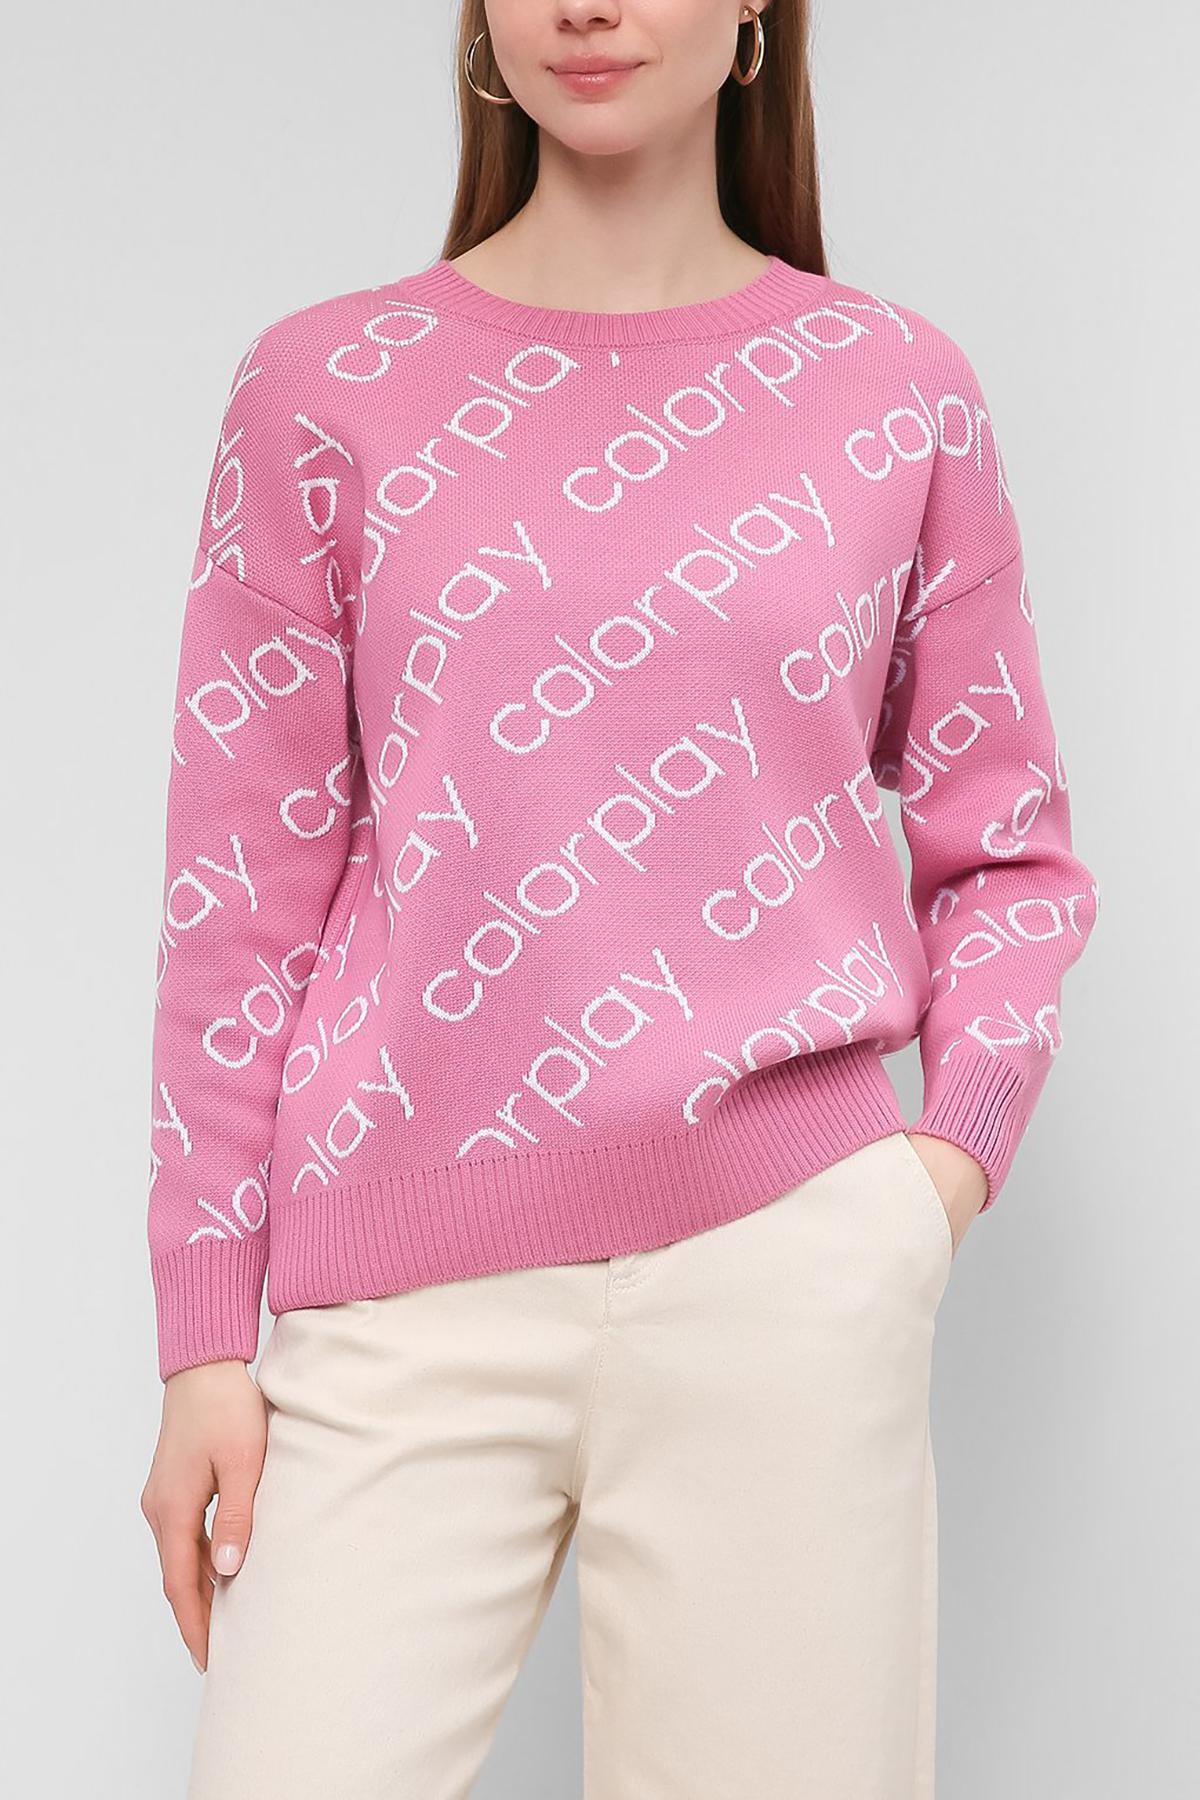 Пуловер Colorplay, 5590 руб. (&laquo;Стокманн&raquo;)